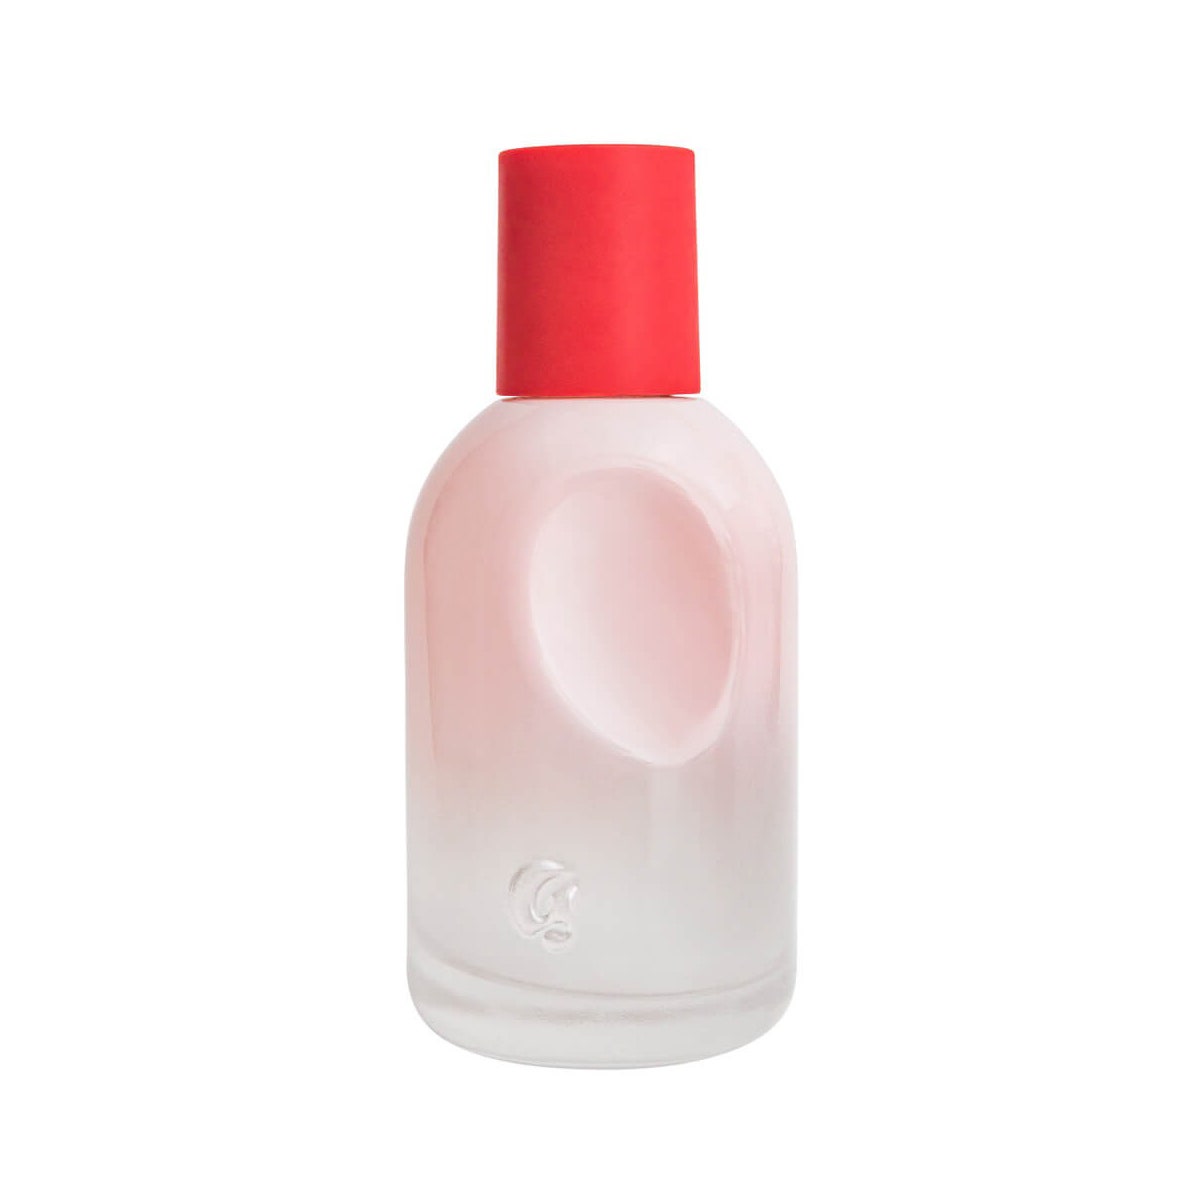 Glossier You rosa Parfümflasche mit rotem Verschluss auf weißem Hintergrund